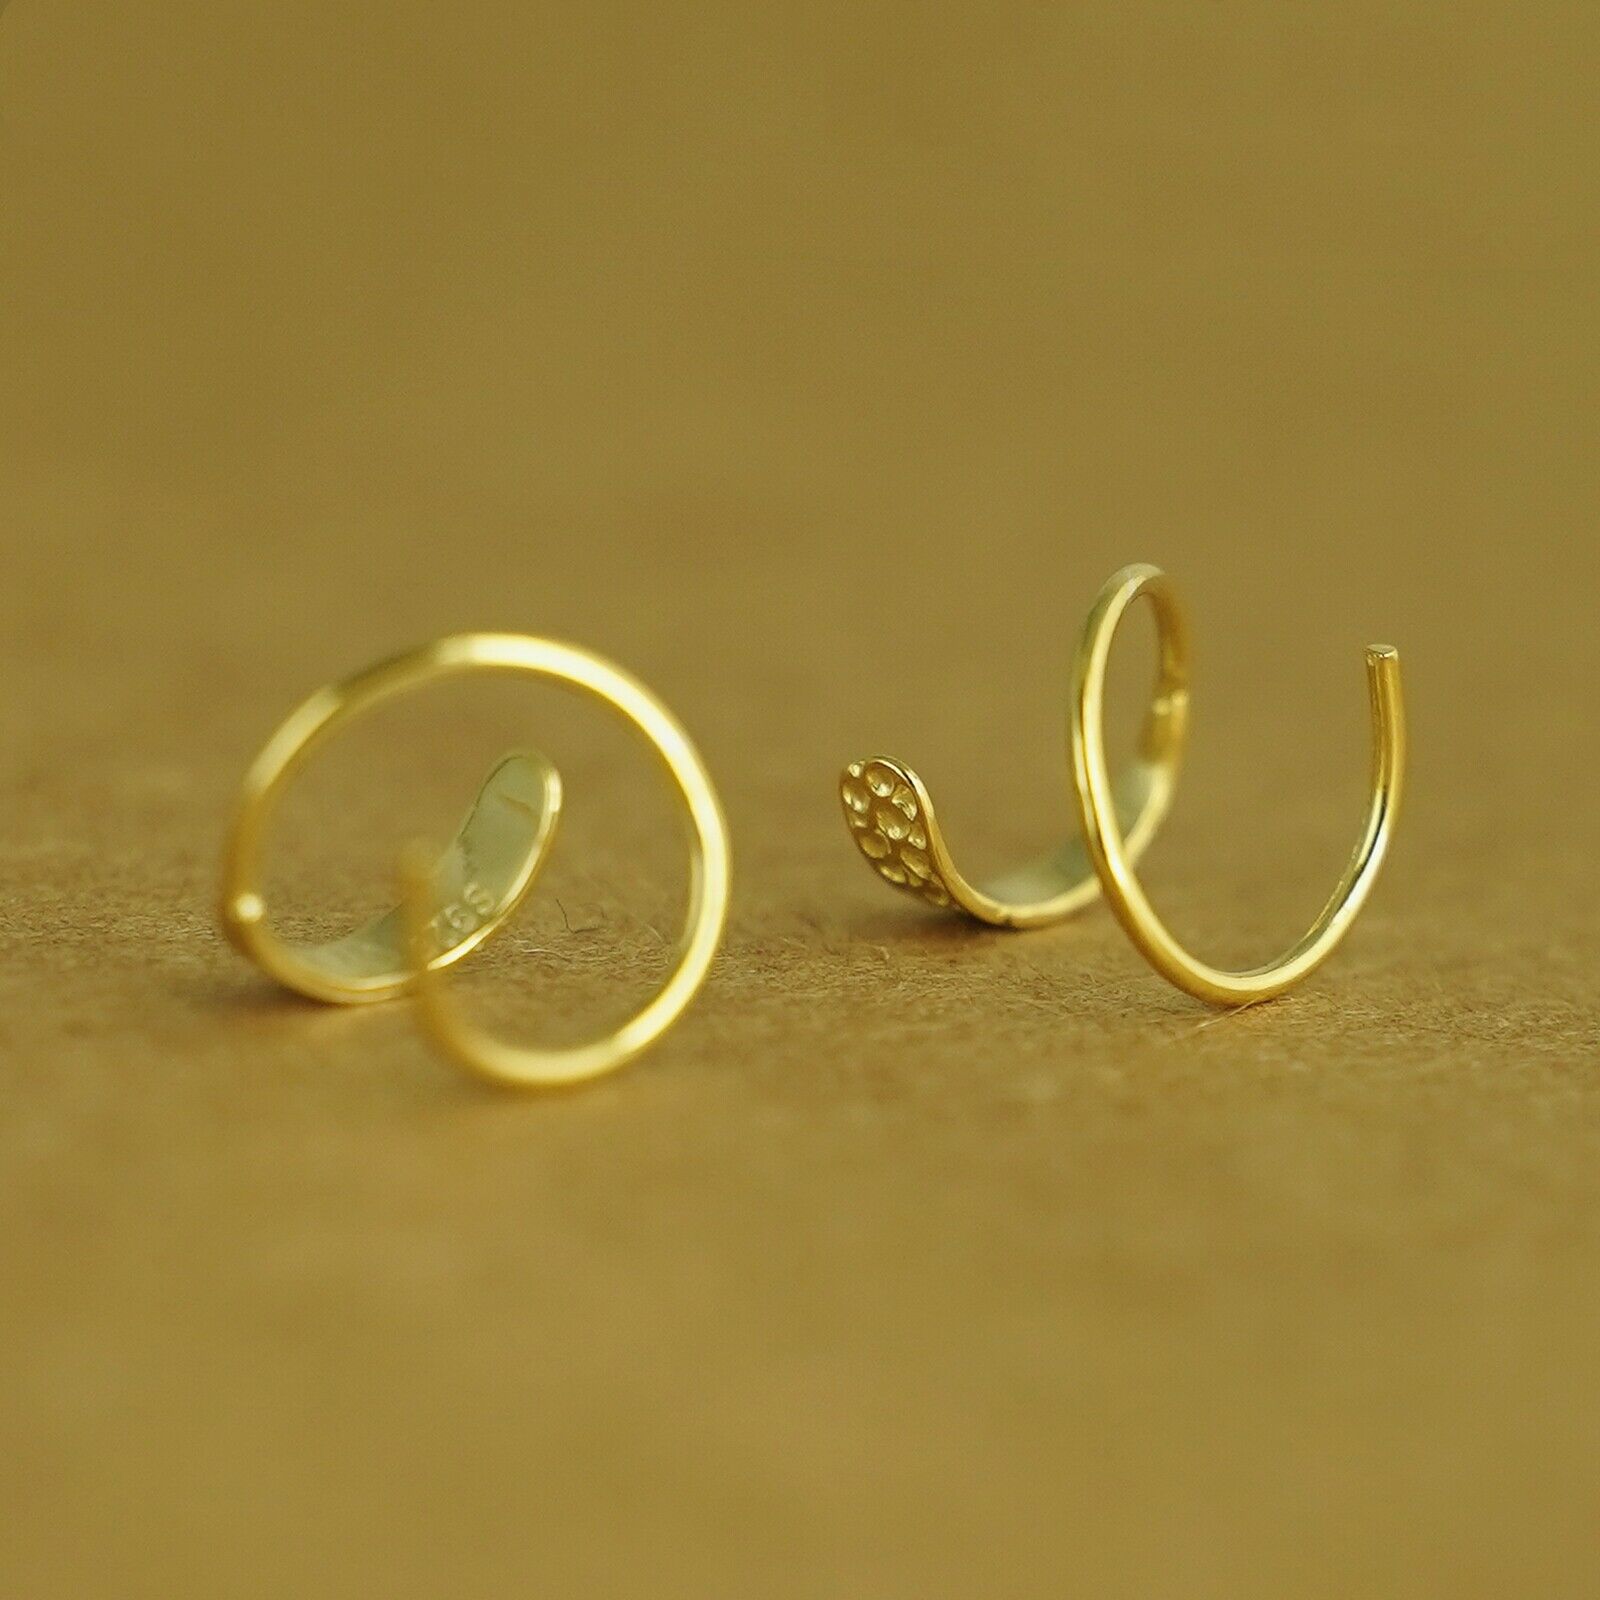 Gold on Sterling Silver Hammered Twirl Wire Huggie Faux 2 Piercings Earrings - sugarkittenlondon